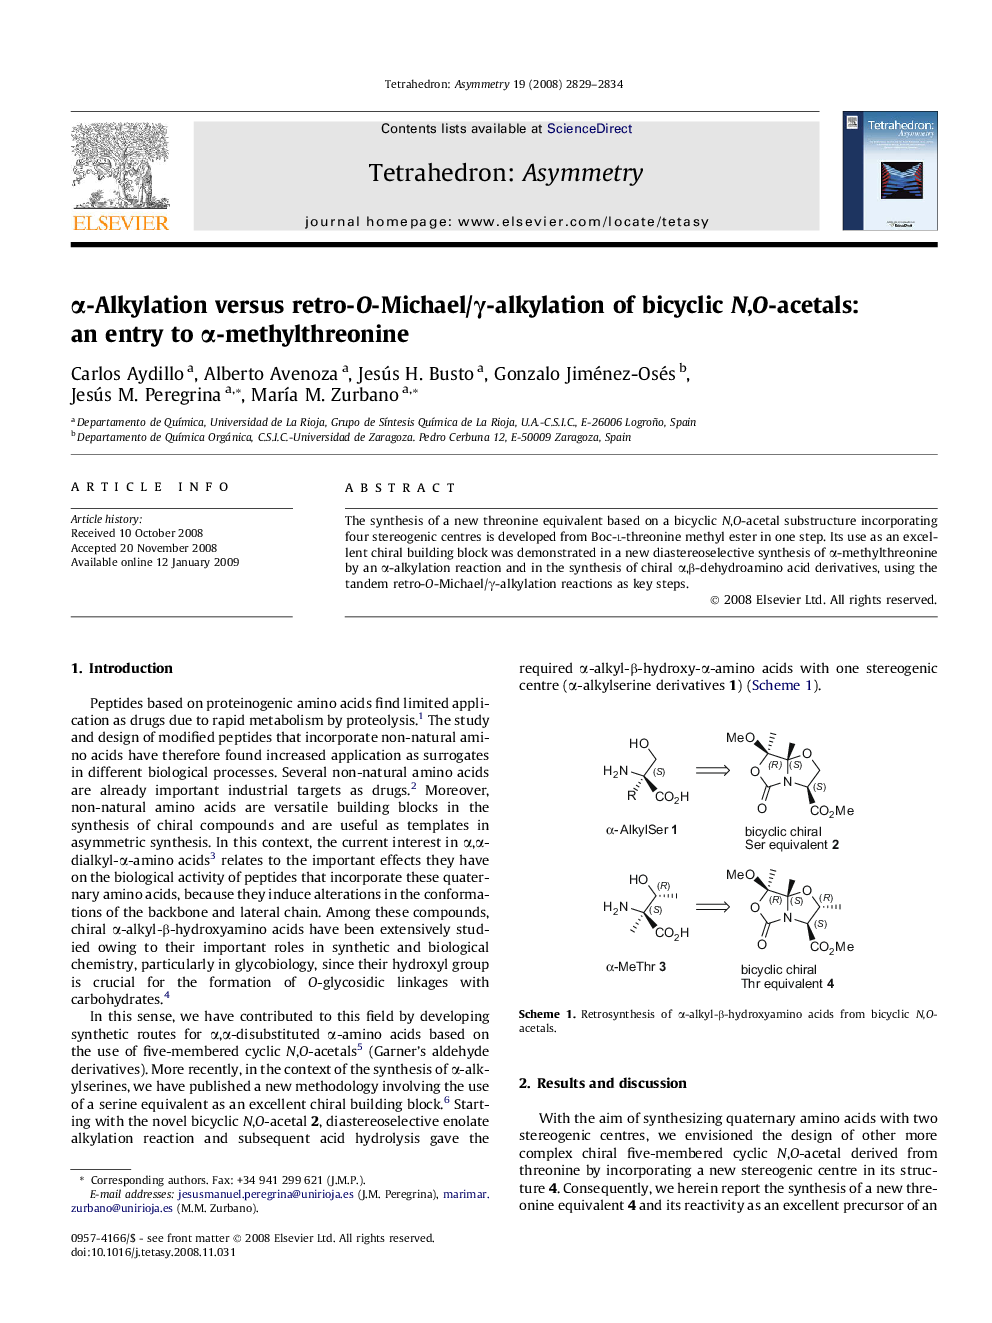 α-Alkylation versus retro-O-Michael/γ-alkylation of bicyclic N,O-acetals: an entry to α-methylthreonine